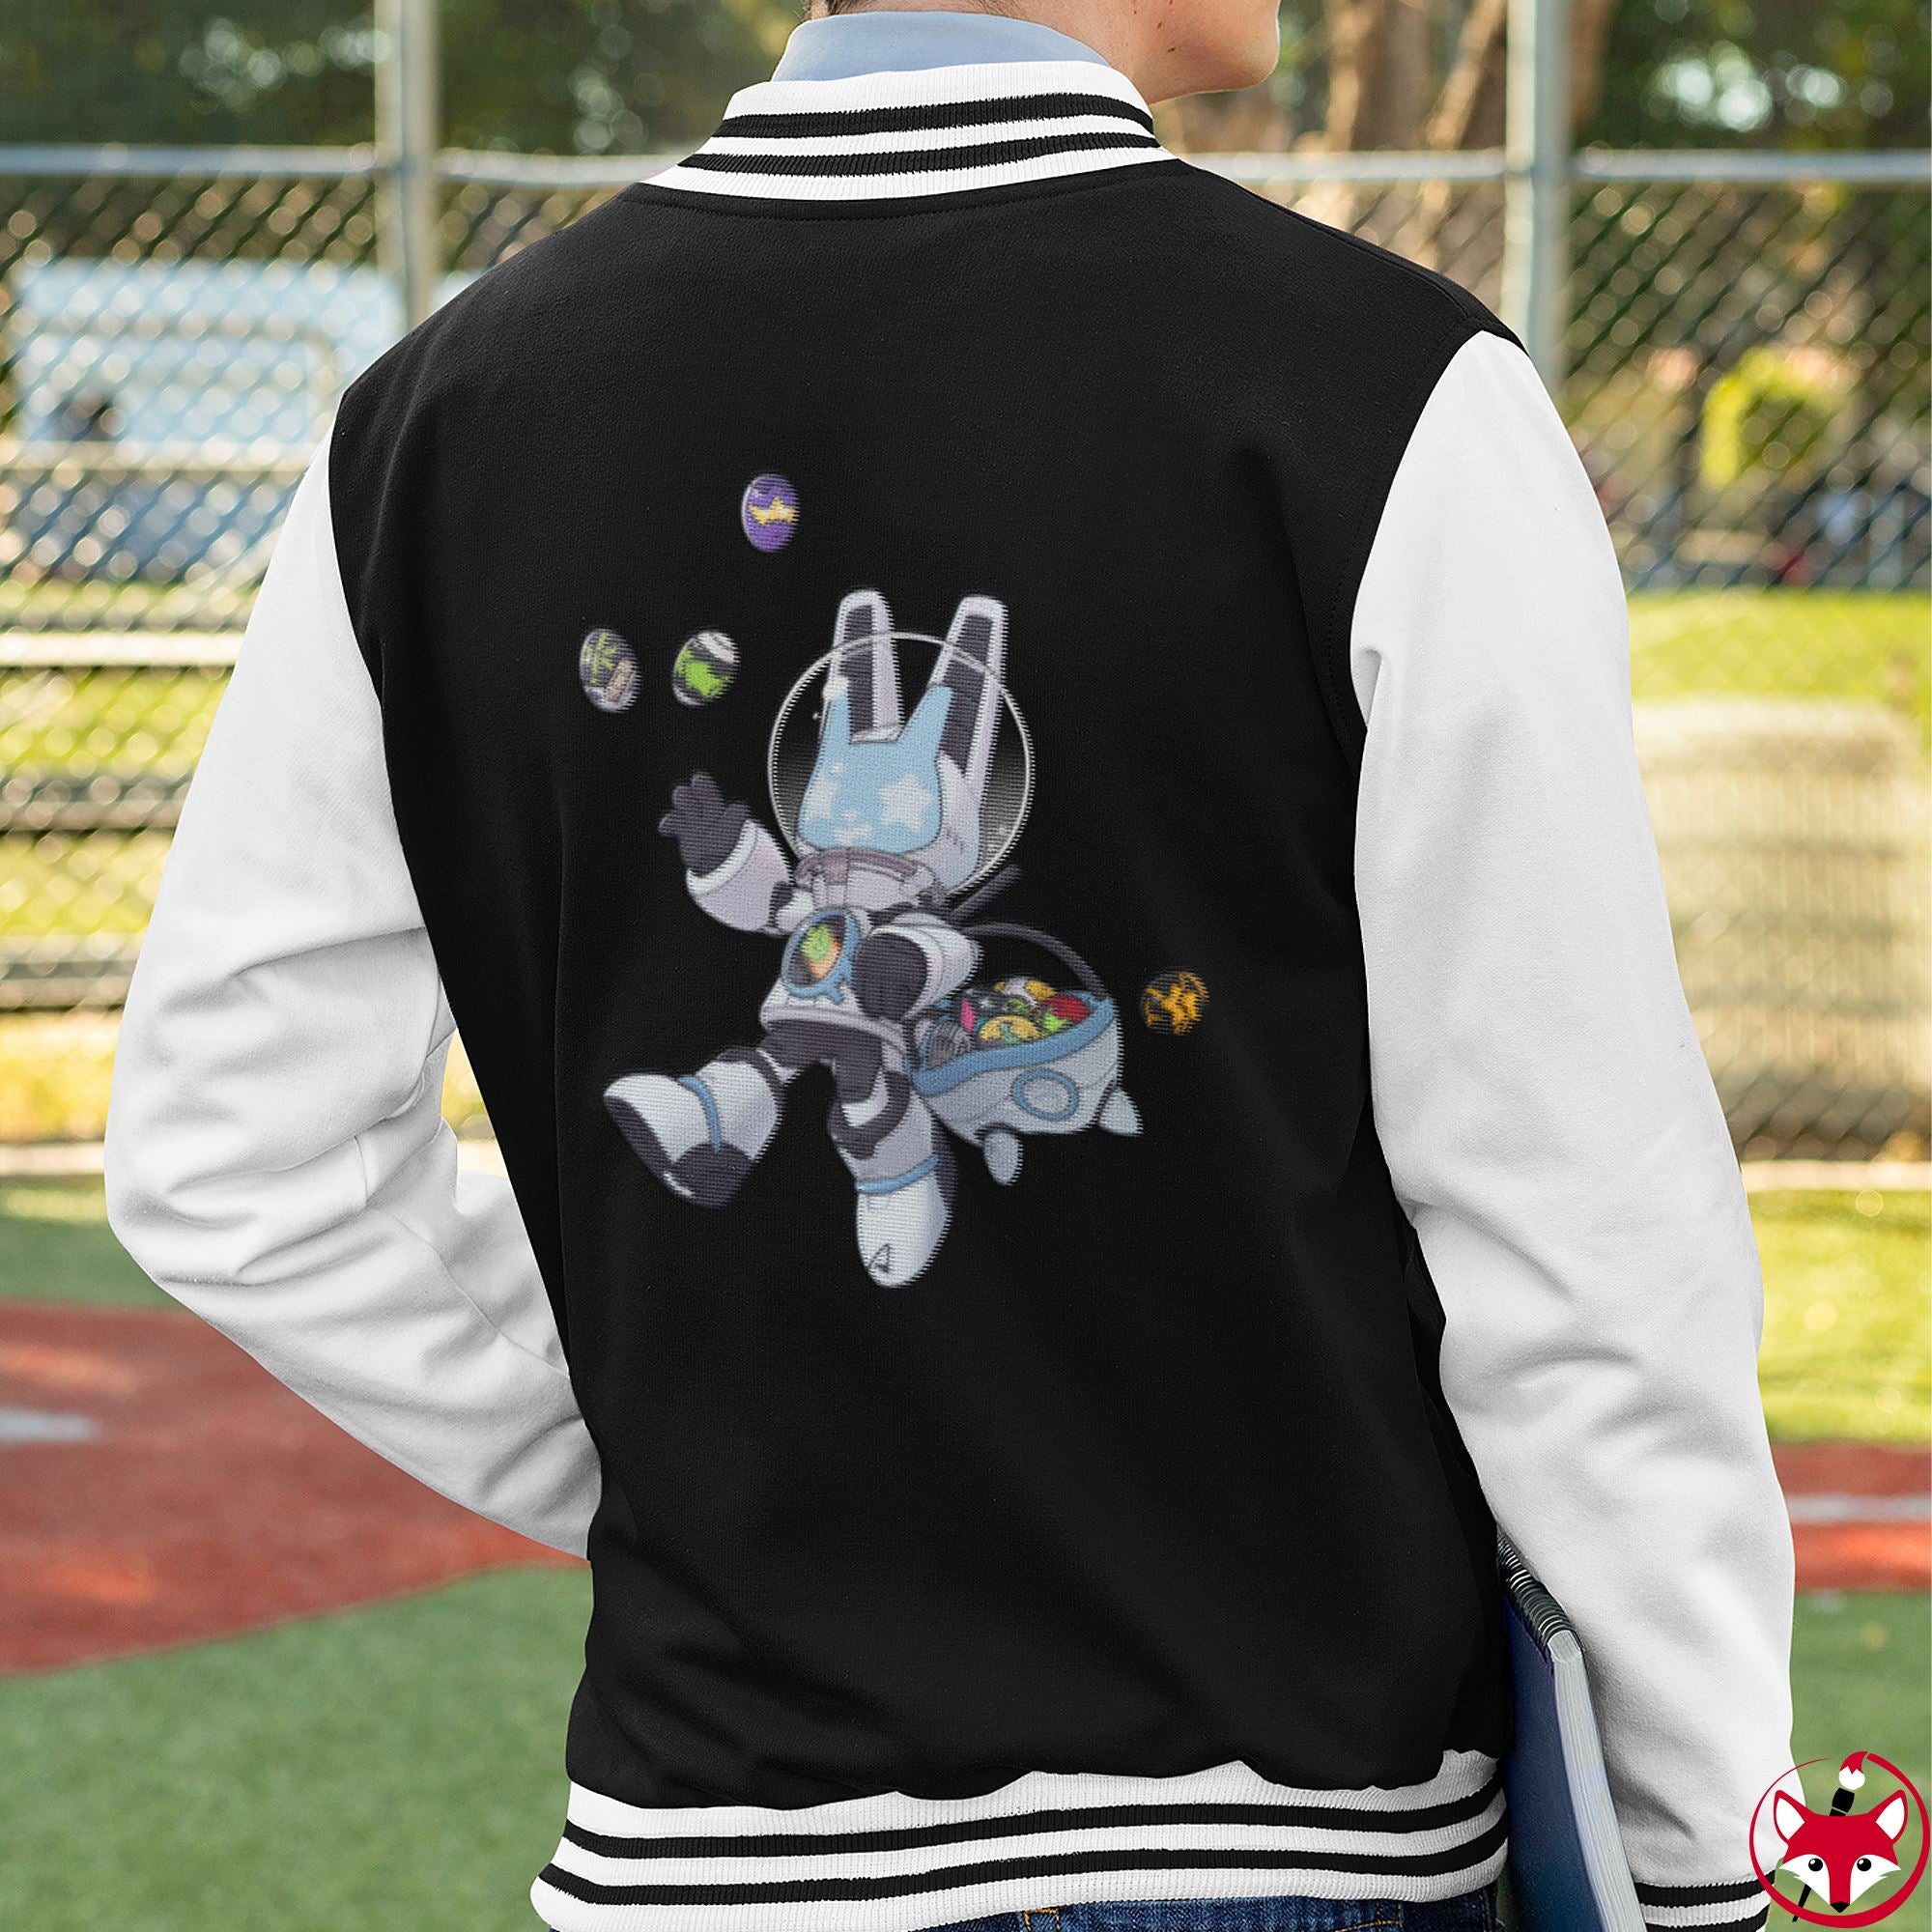 Easter Ace - Varsity Jacket Varsity Jacket Lordyan 